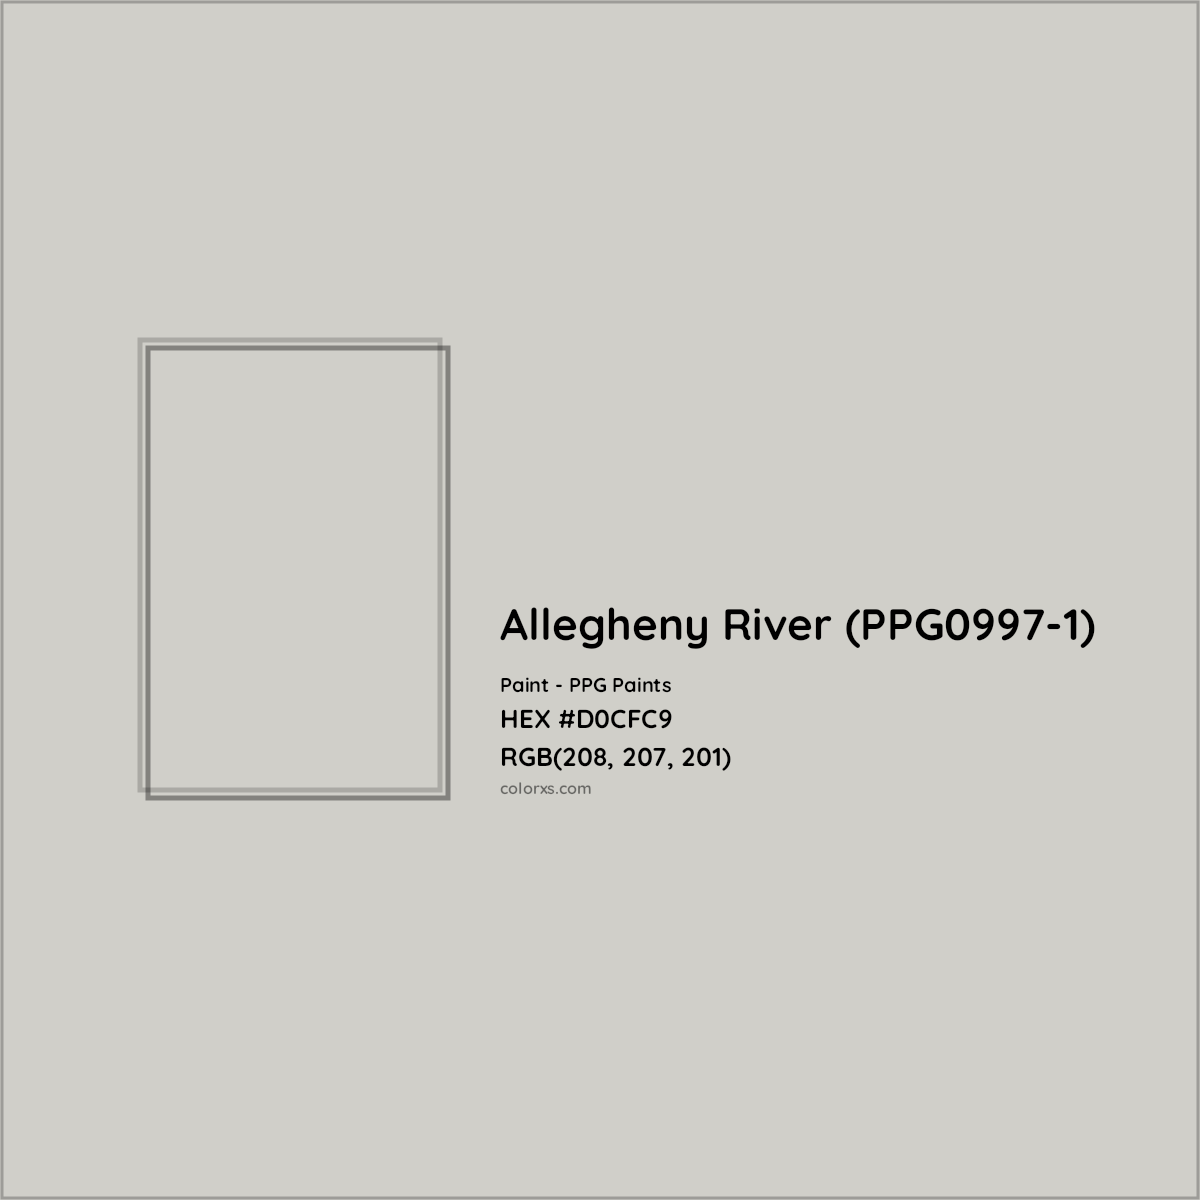 HEX #D0CFC9 Allegheny River (PPG0997-1) Paint PPG Paints - Color Code